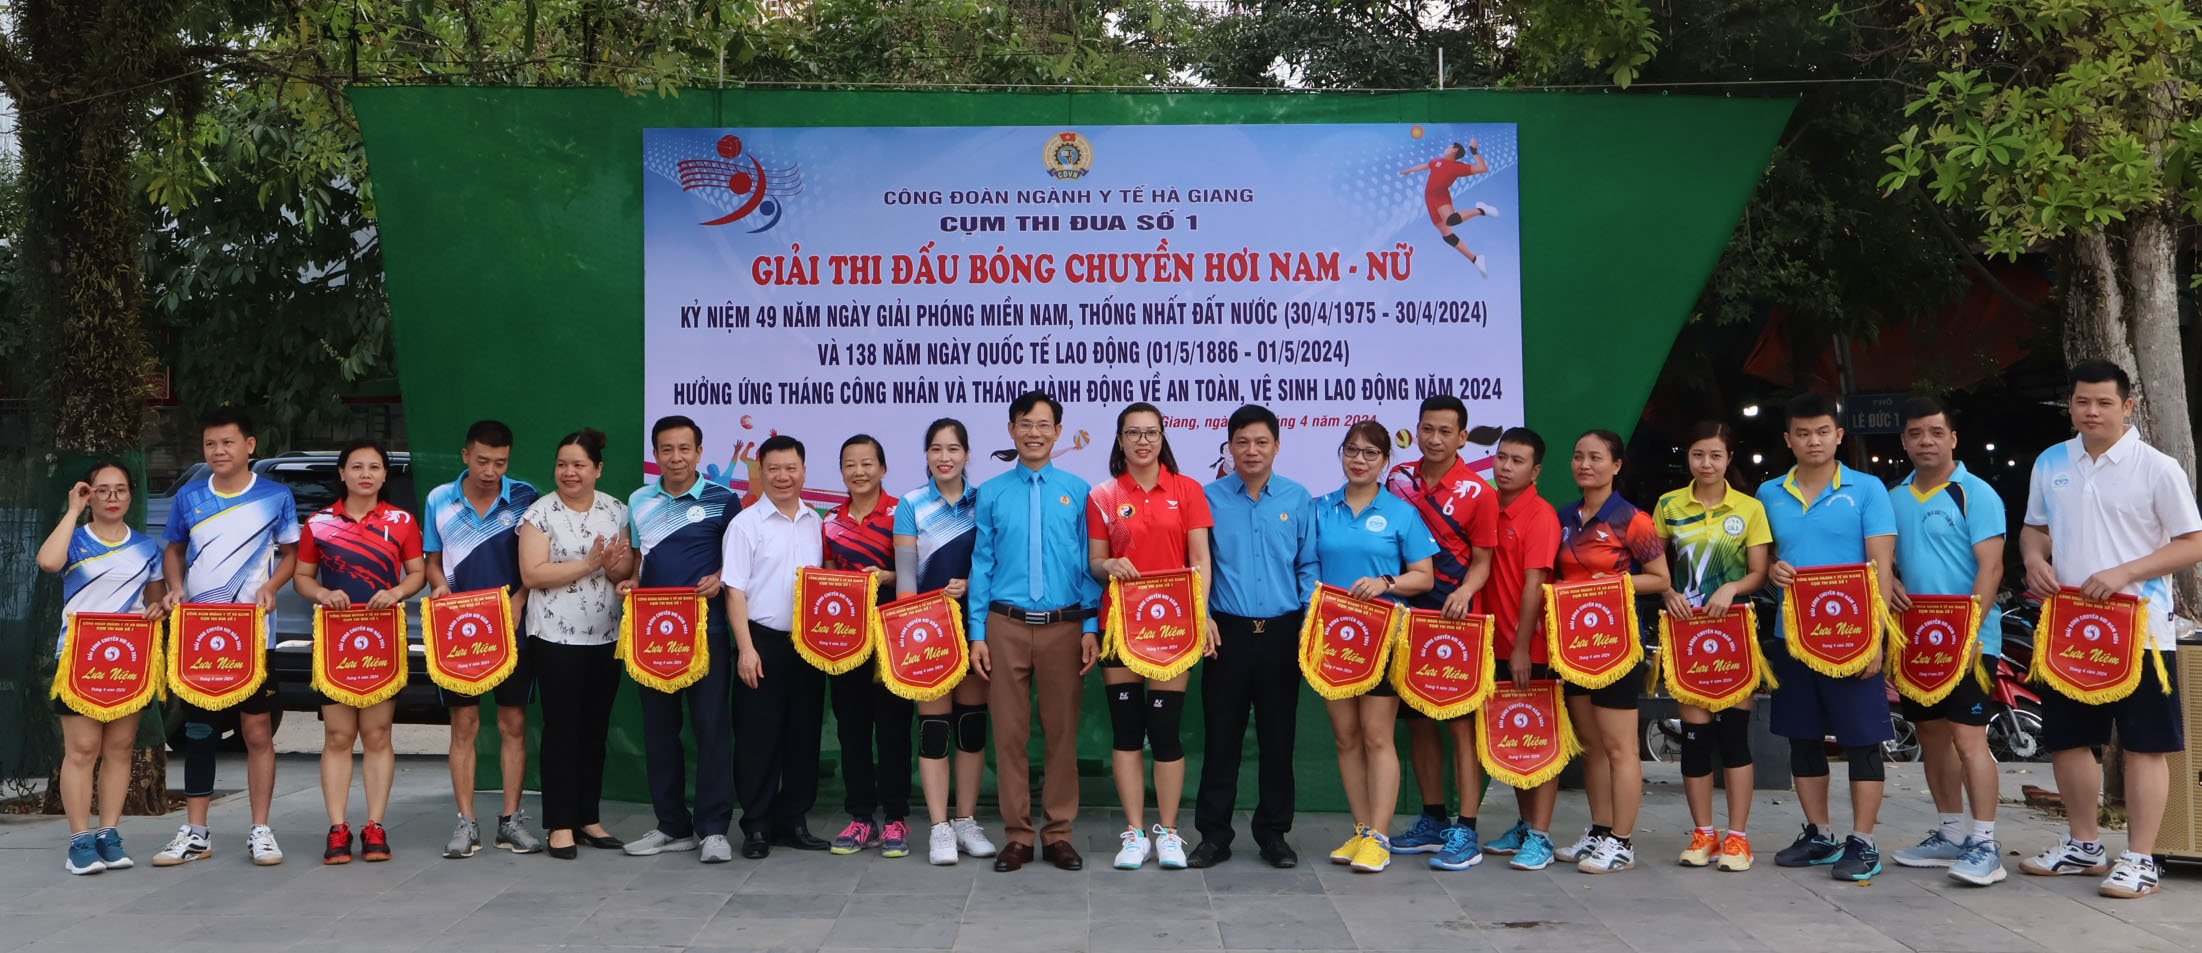 Đồng chí Vũ Hùng Vương – Phó Giám đốc Sở Y tế, Chủ tịch Công đoàn Ngành và lãnh đạo các đơn vị y tế trao cờ lưu niệm cho các tham gia giải bóng chuyền